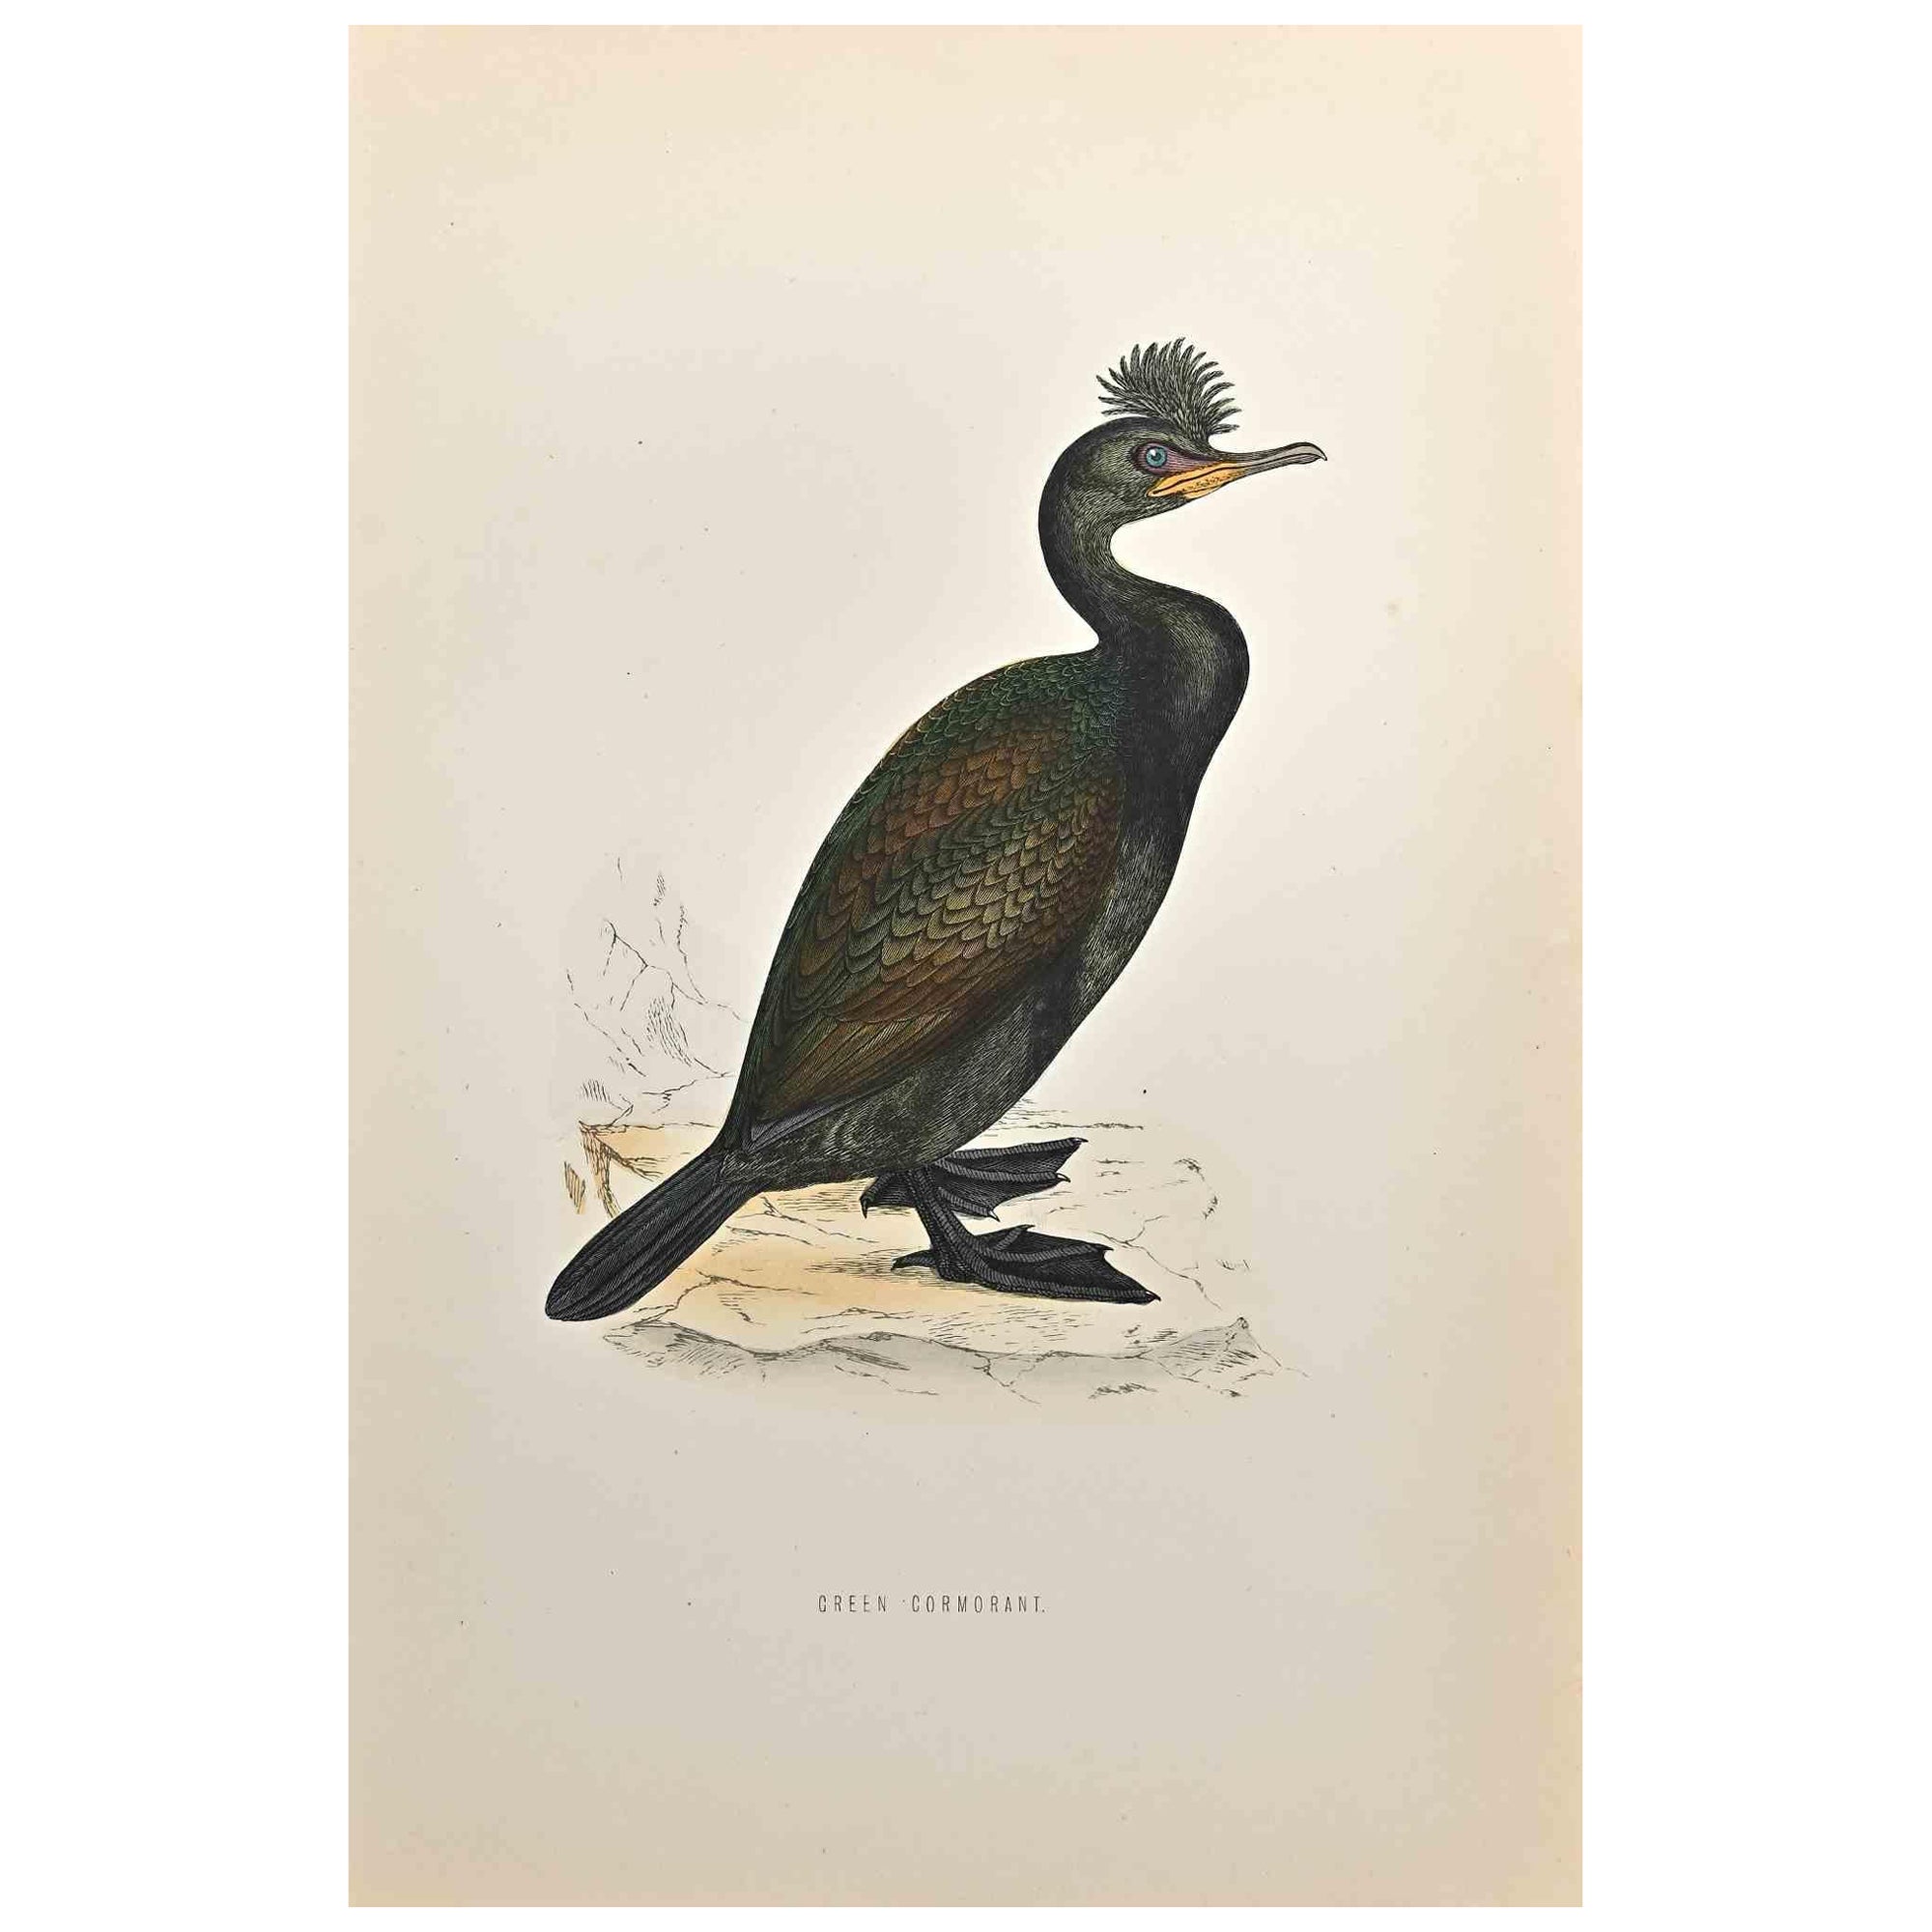 Green Cormorant est une œuvre d'art moderne réalisée en 1870 par l'artiste britannique Alexander Francis Lydon (1836-1917) . 

Gravure sur bois, coloriée à la main, publiée par London, Bell & Sons, 1870.  Nom de l'oiseau imprimé sur la plaque. Cette